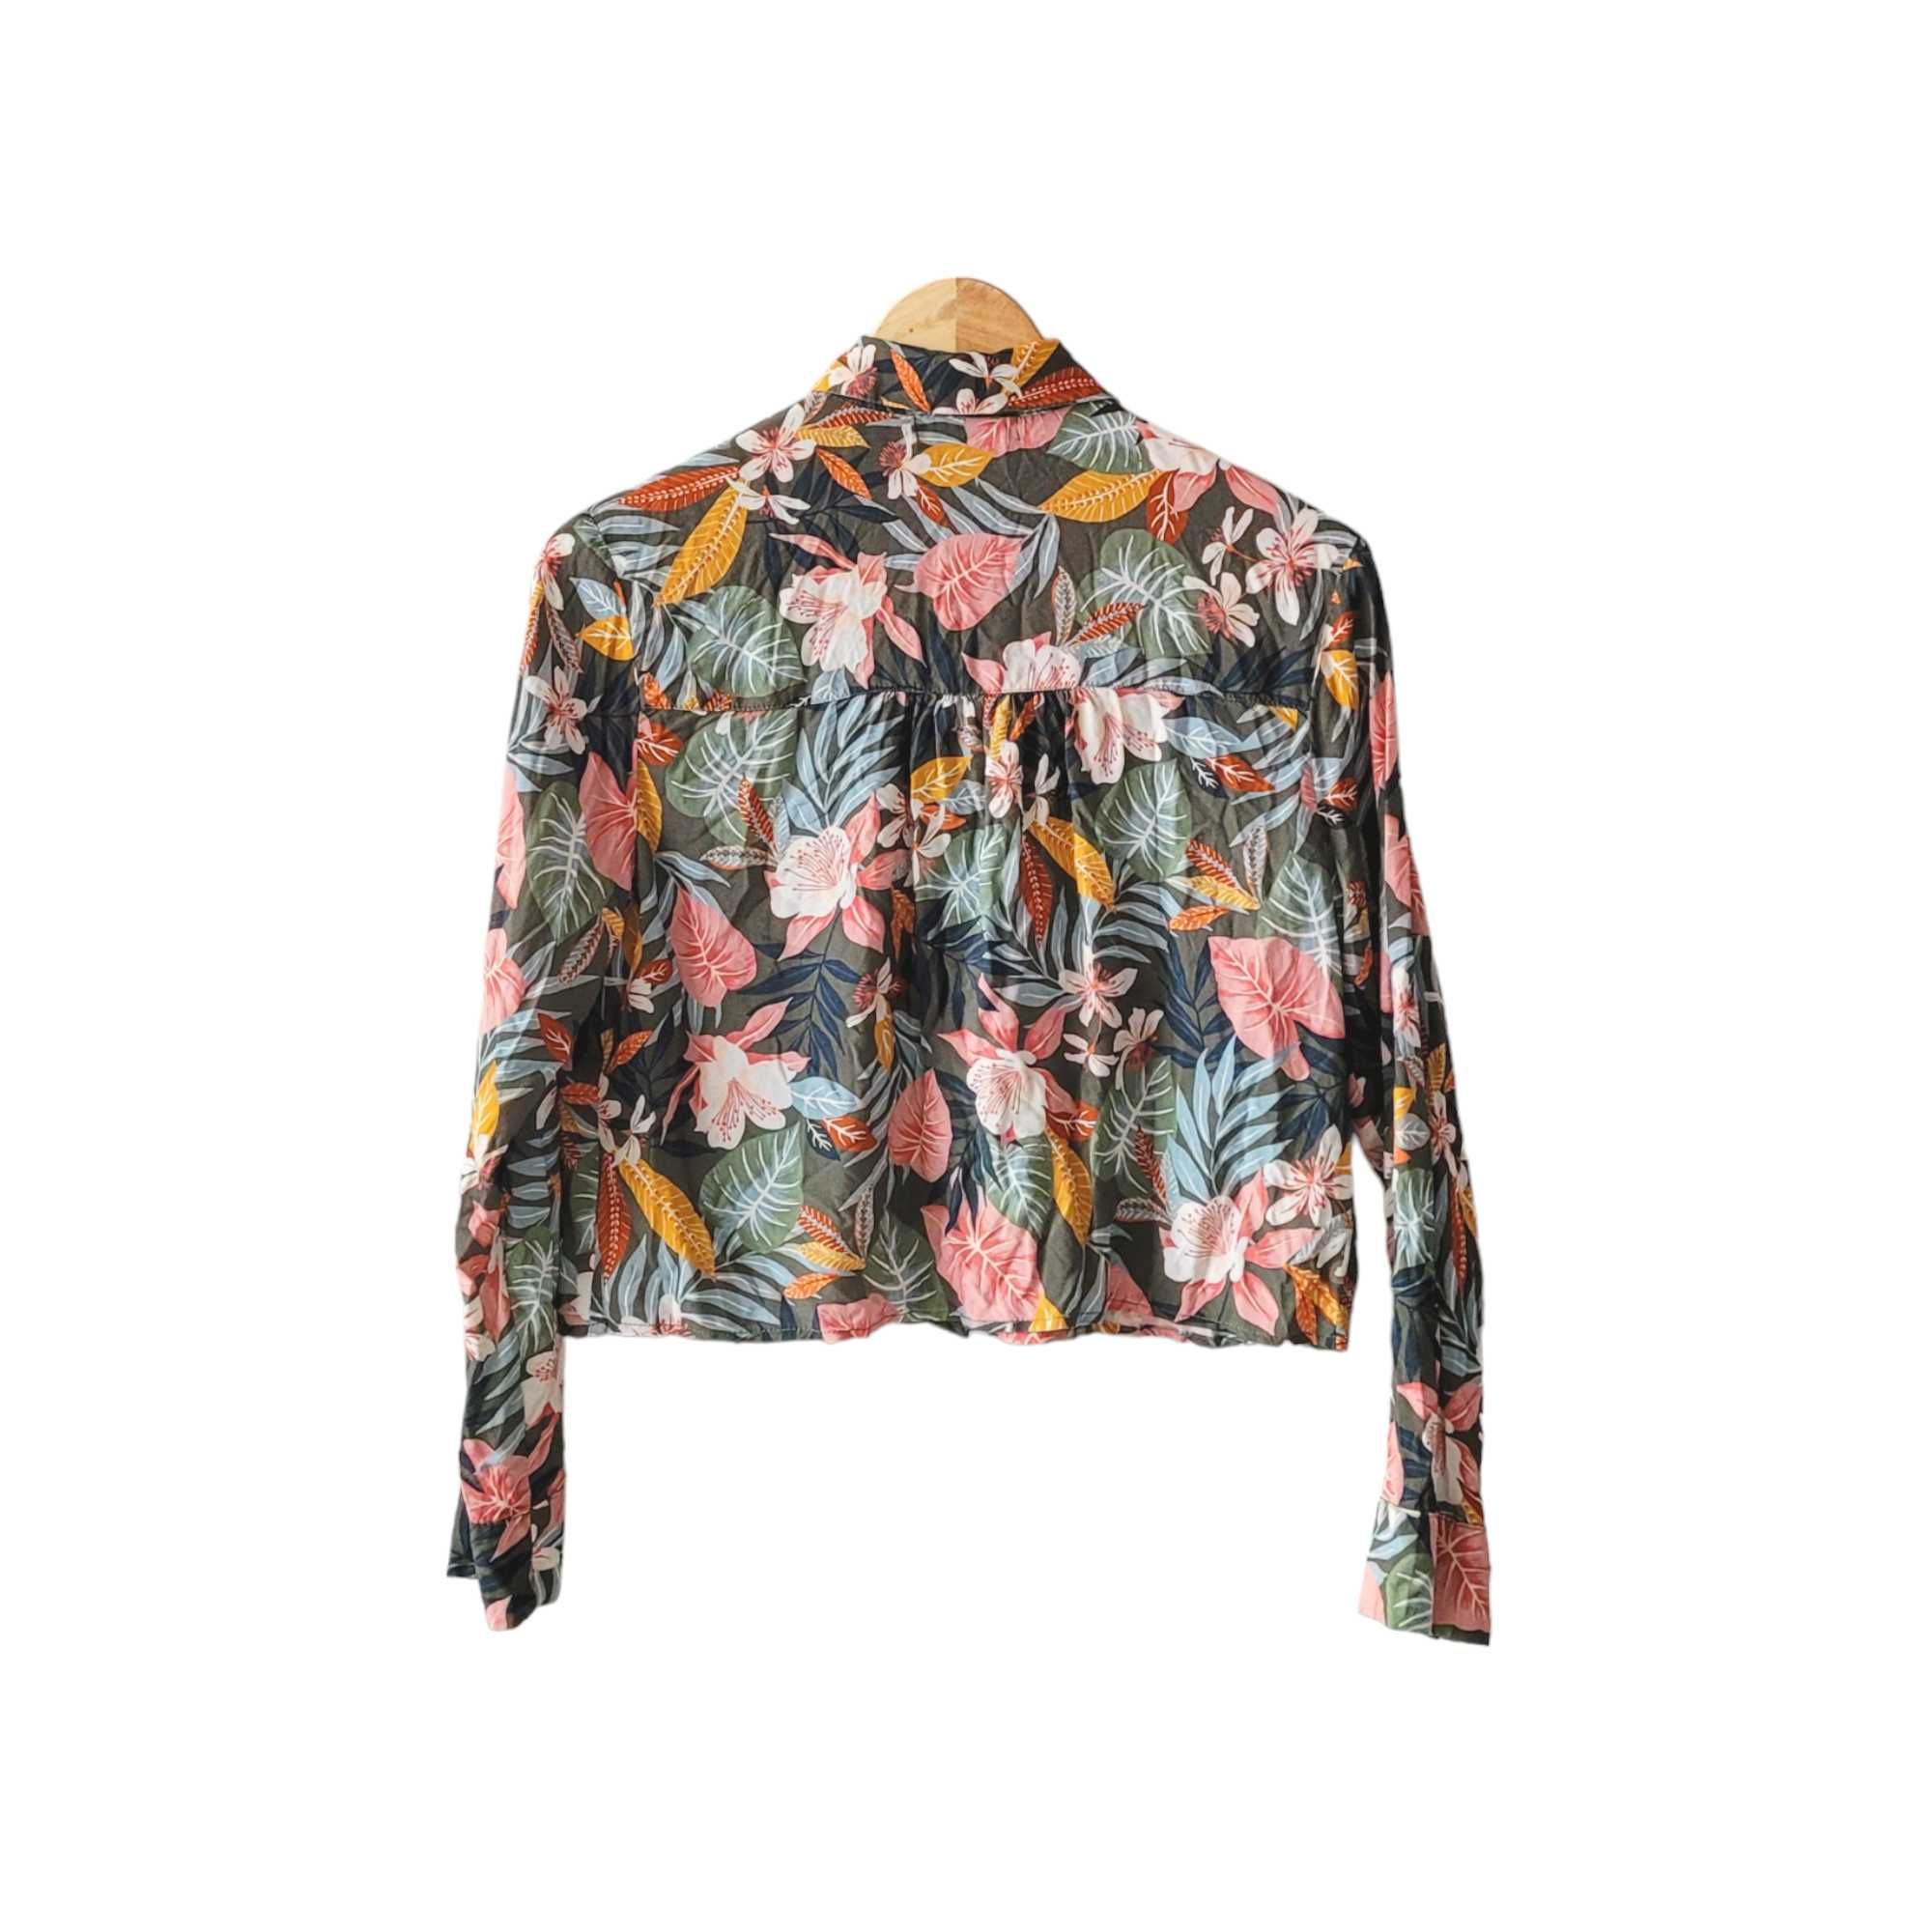 Kolorowa krótka koszula bluzka damska S Bershka w kwiaty liście boho